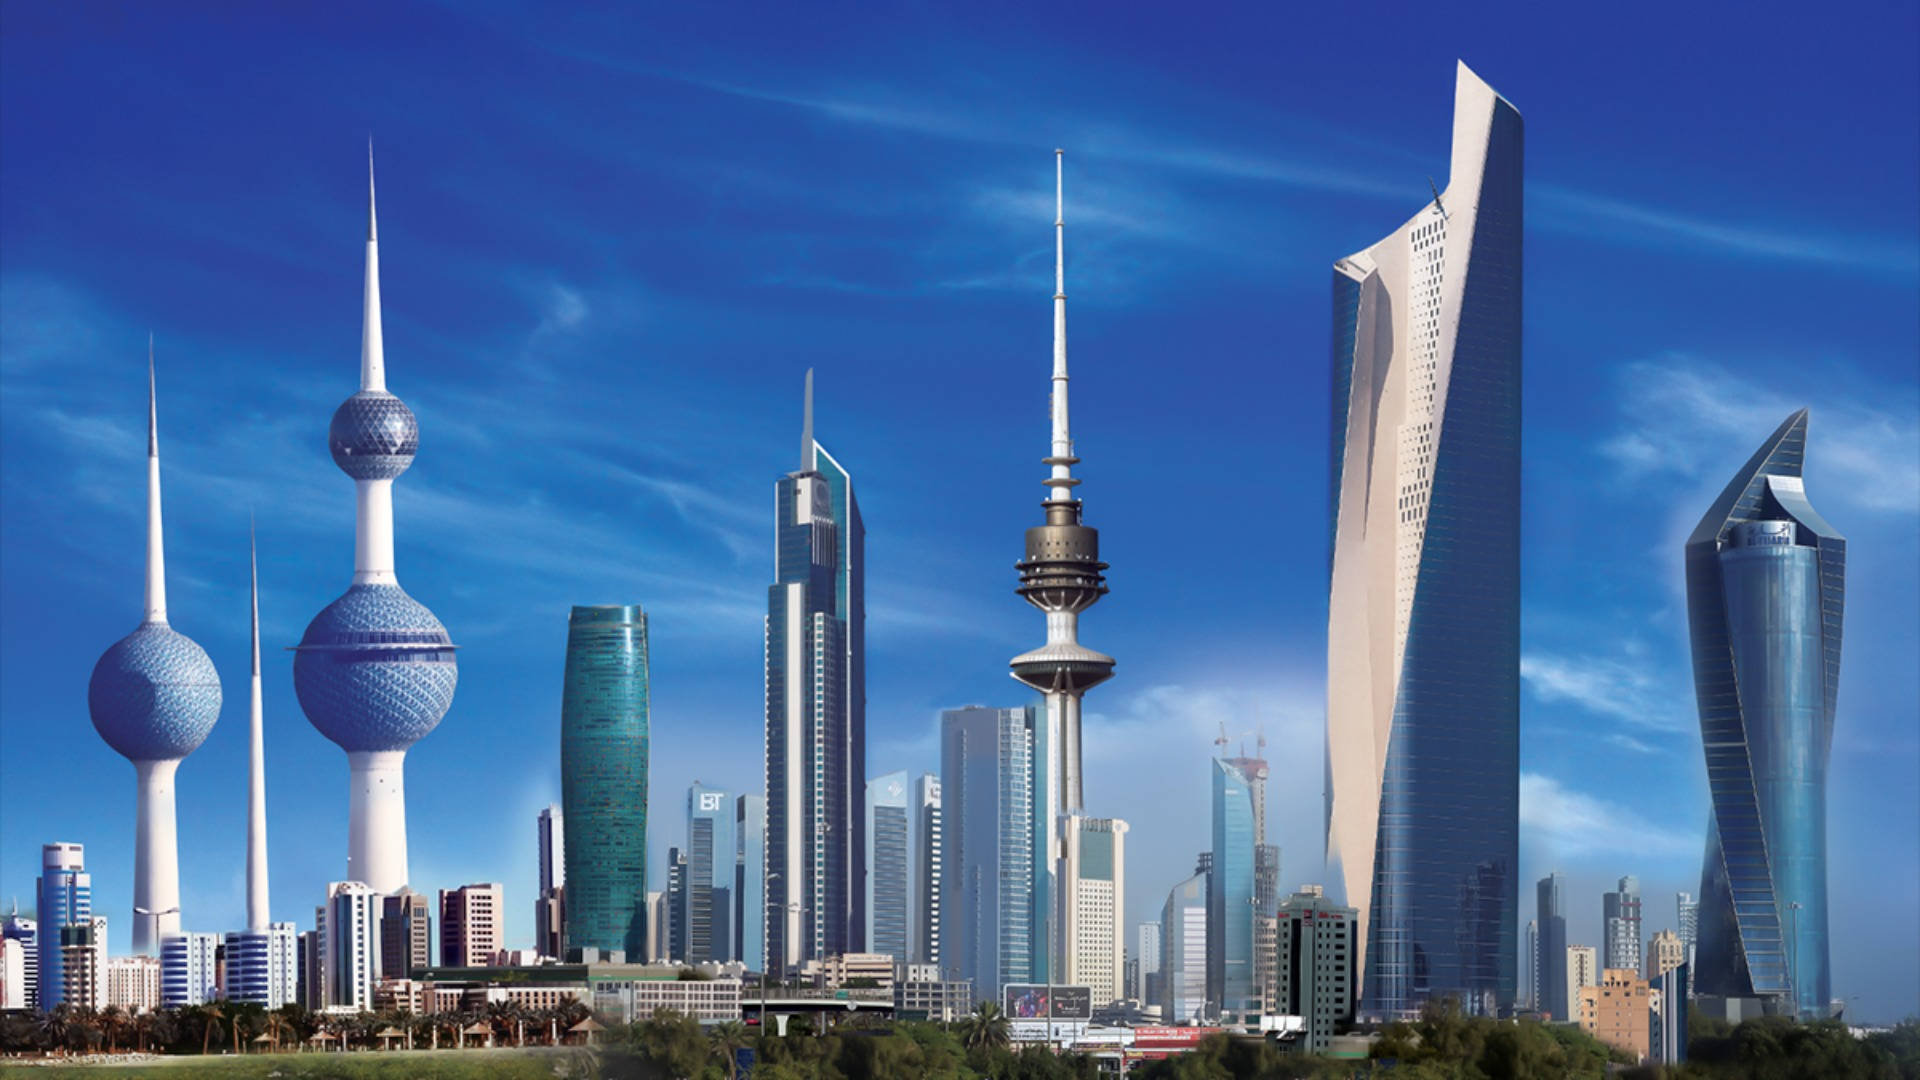 Kuwait Architectural Marvels Background